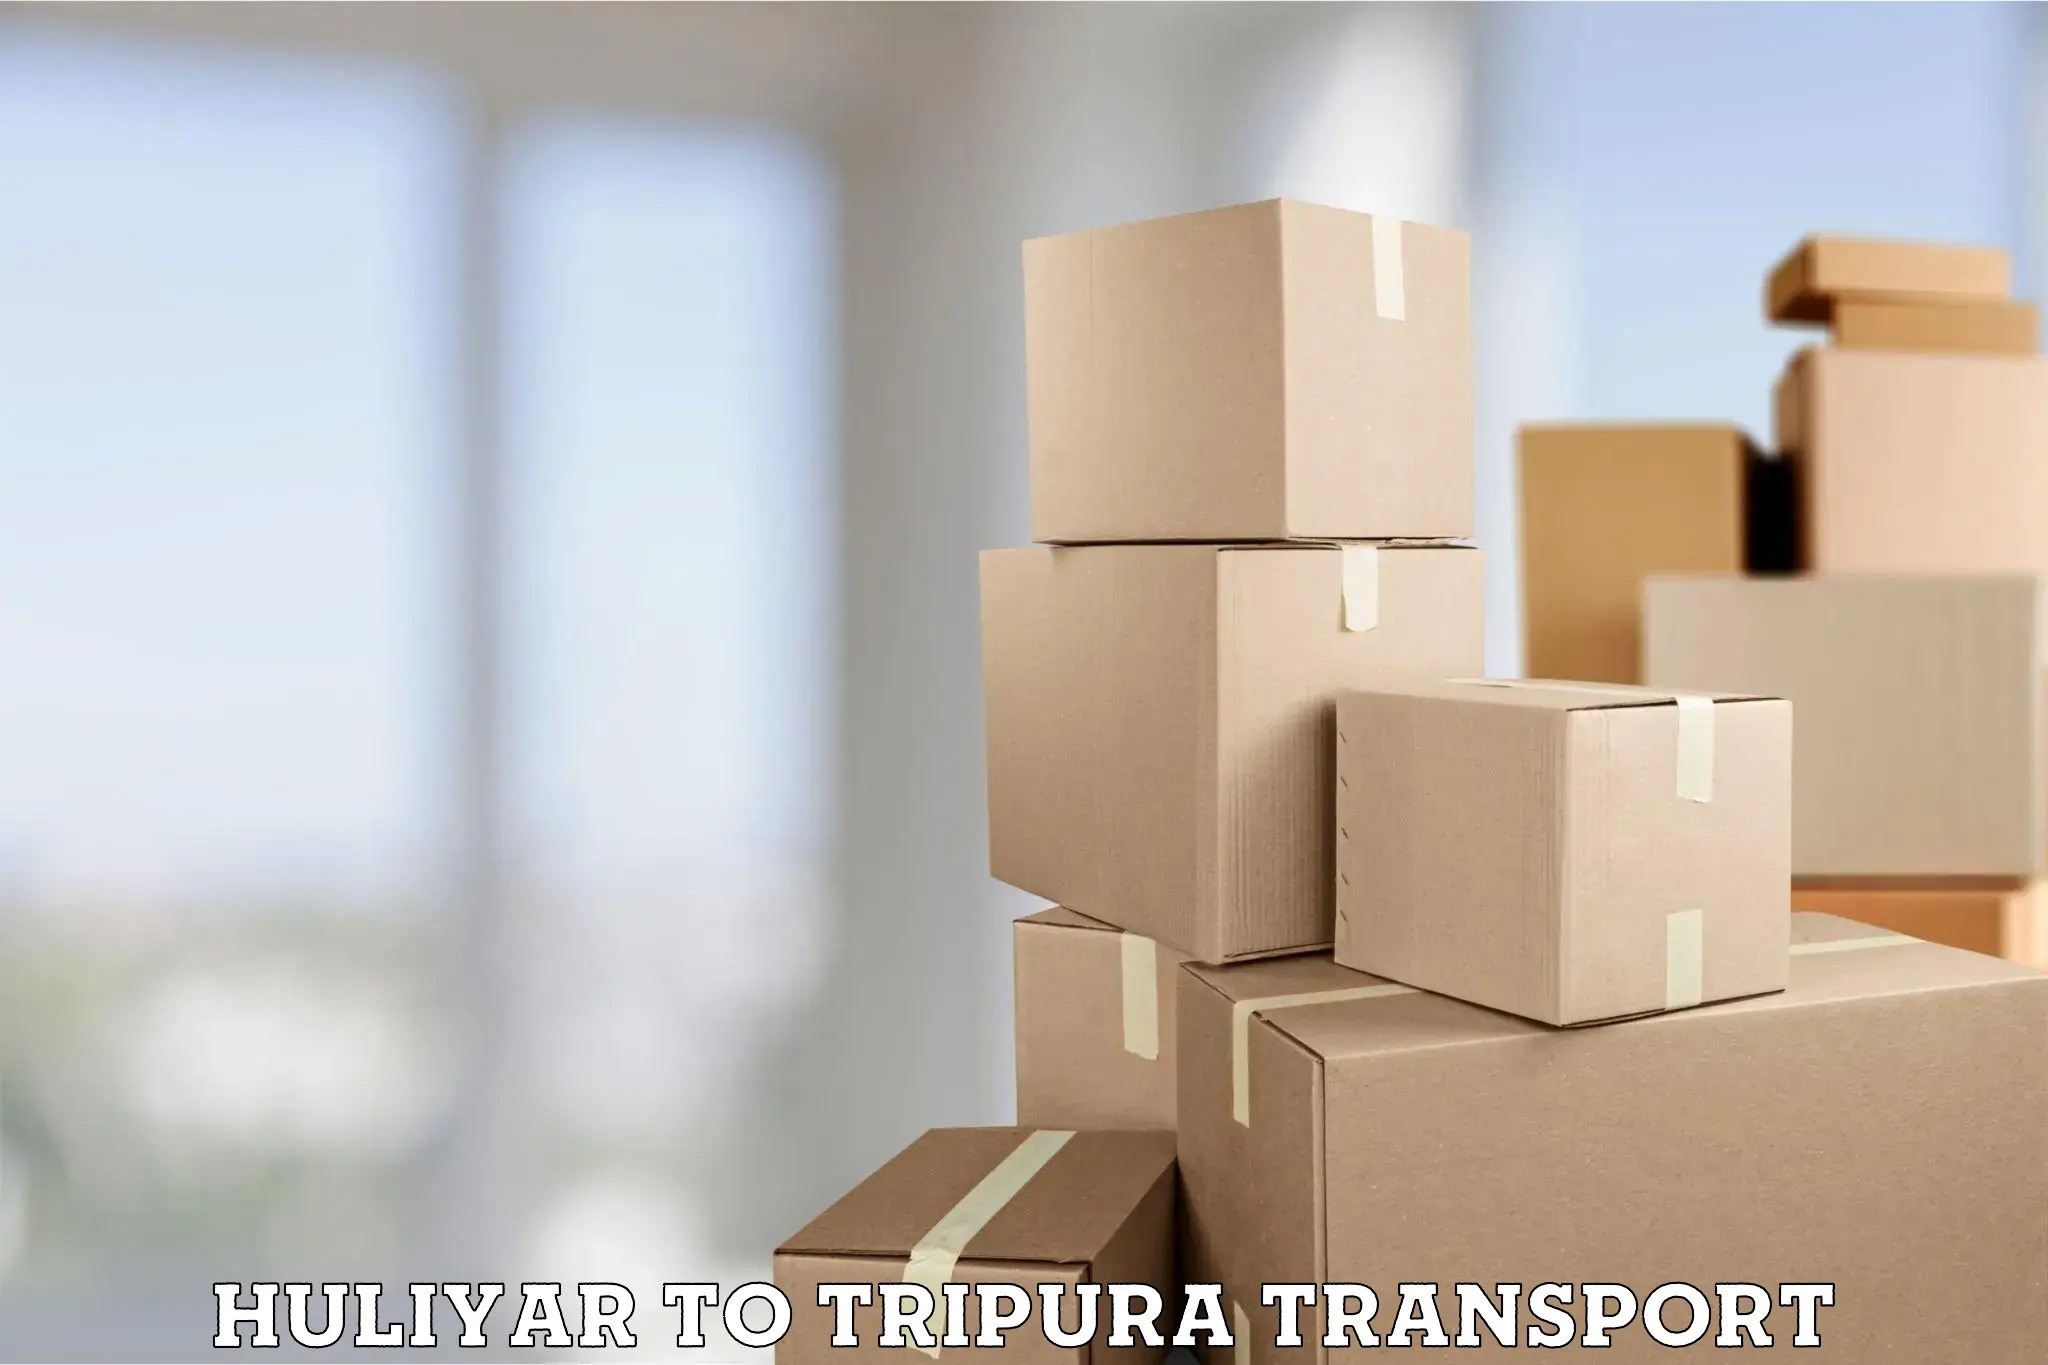 Furniture transport service in Huliyar to Udaipur Tripura